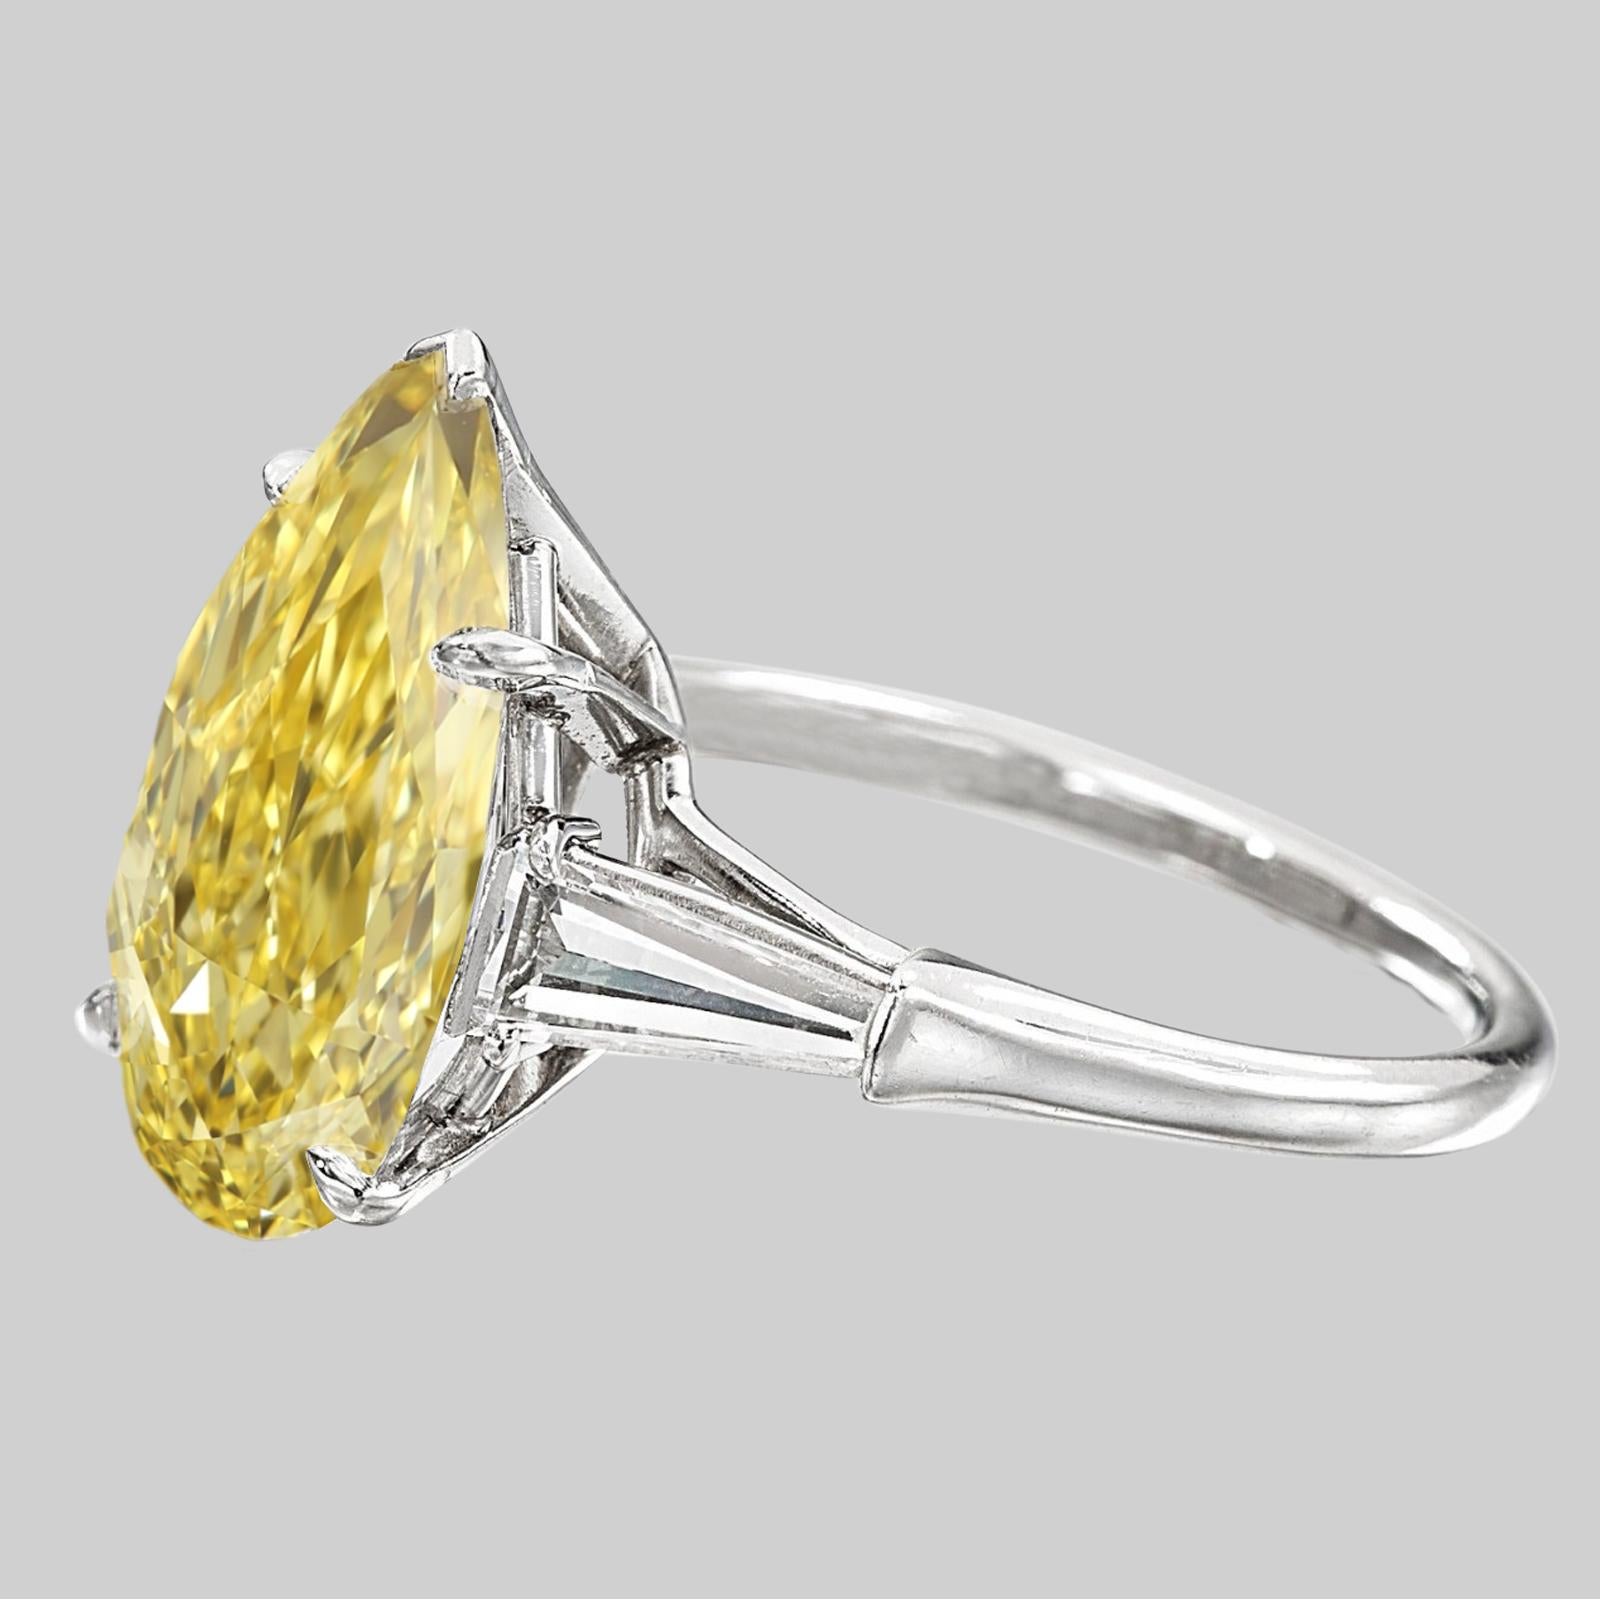 Cushion Cut GIA Certified 5.09 Carat Fancy Yellow Diamond Ring For Sale